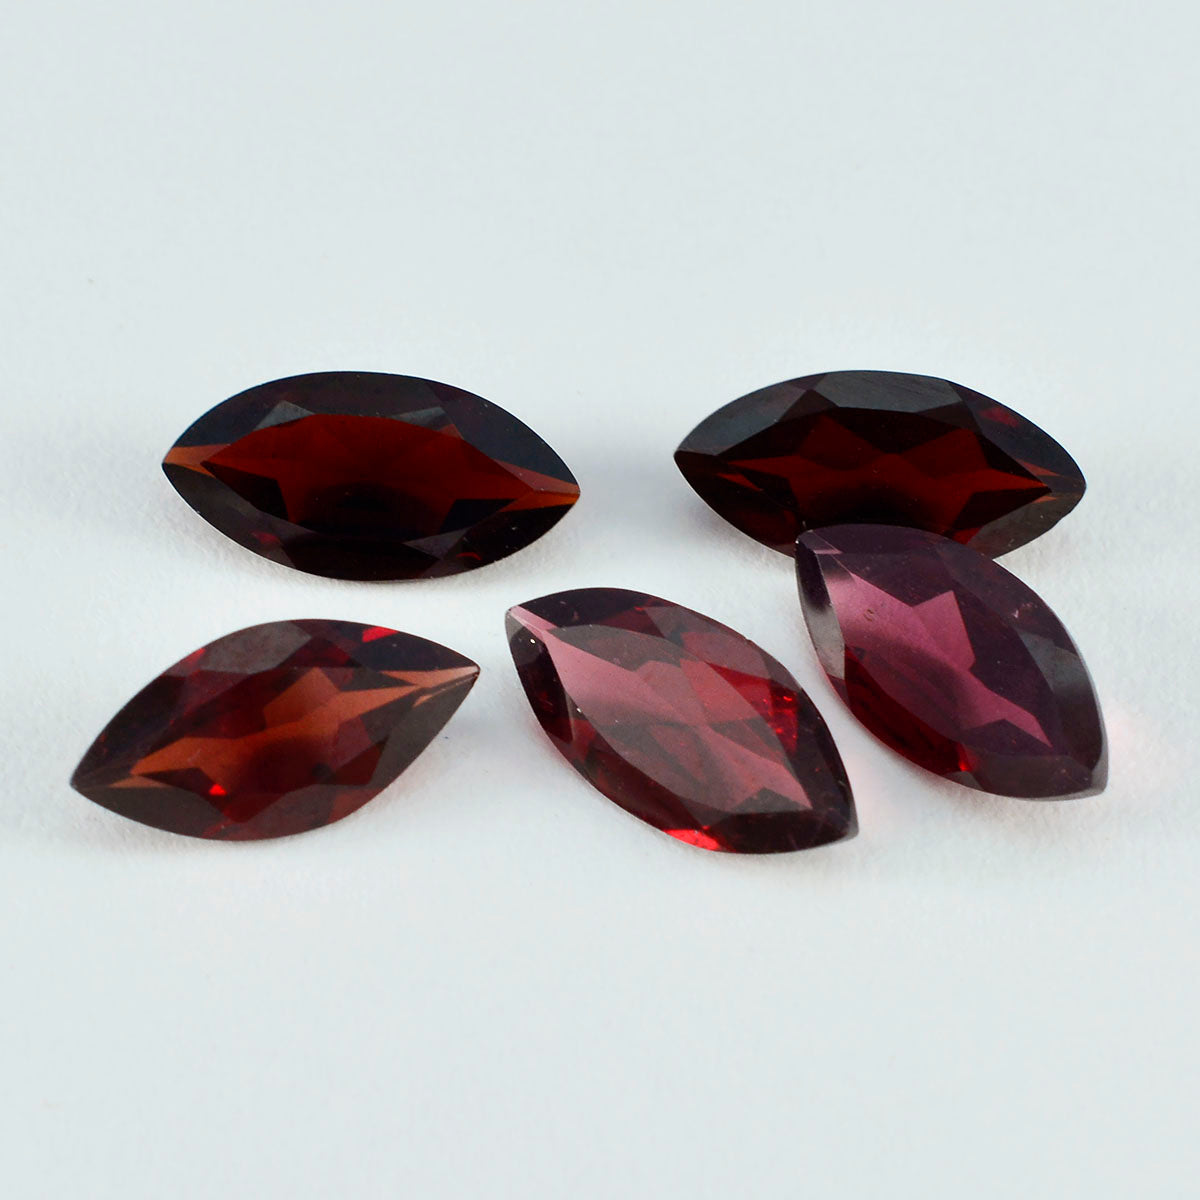 Riyogems 1 pieza de granate rojo auténtico facetado de 0.118 x 0.197 in, forma ovalada, calidad A+, piedra preciosa suelta